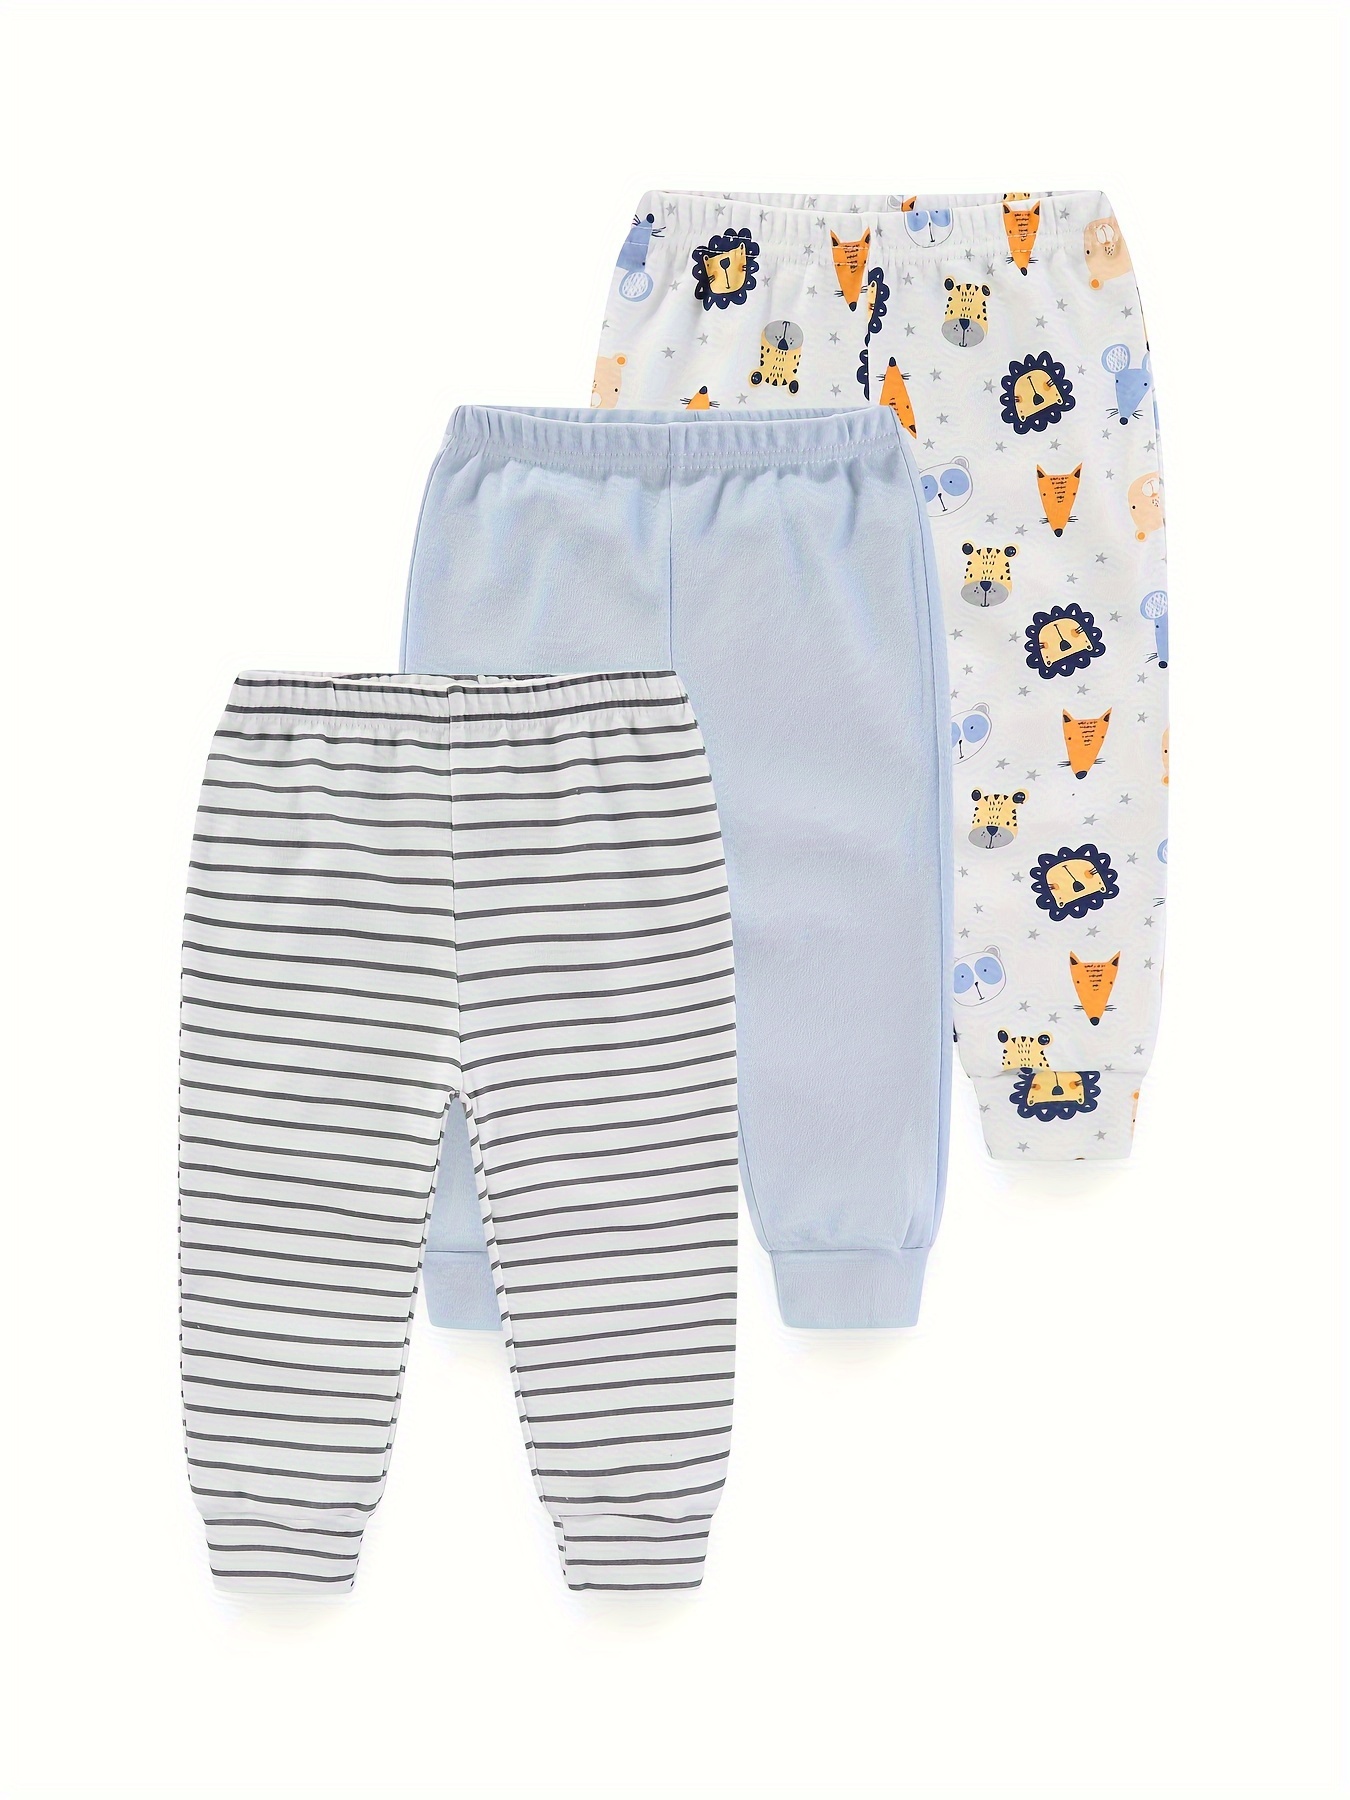 Kids Children Boys Underwear Set Cute Print Briefs Shorts Cotton Underwear  Trunks 3PCS Baby Girl Panties (Blue, 12-18 Months)